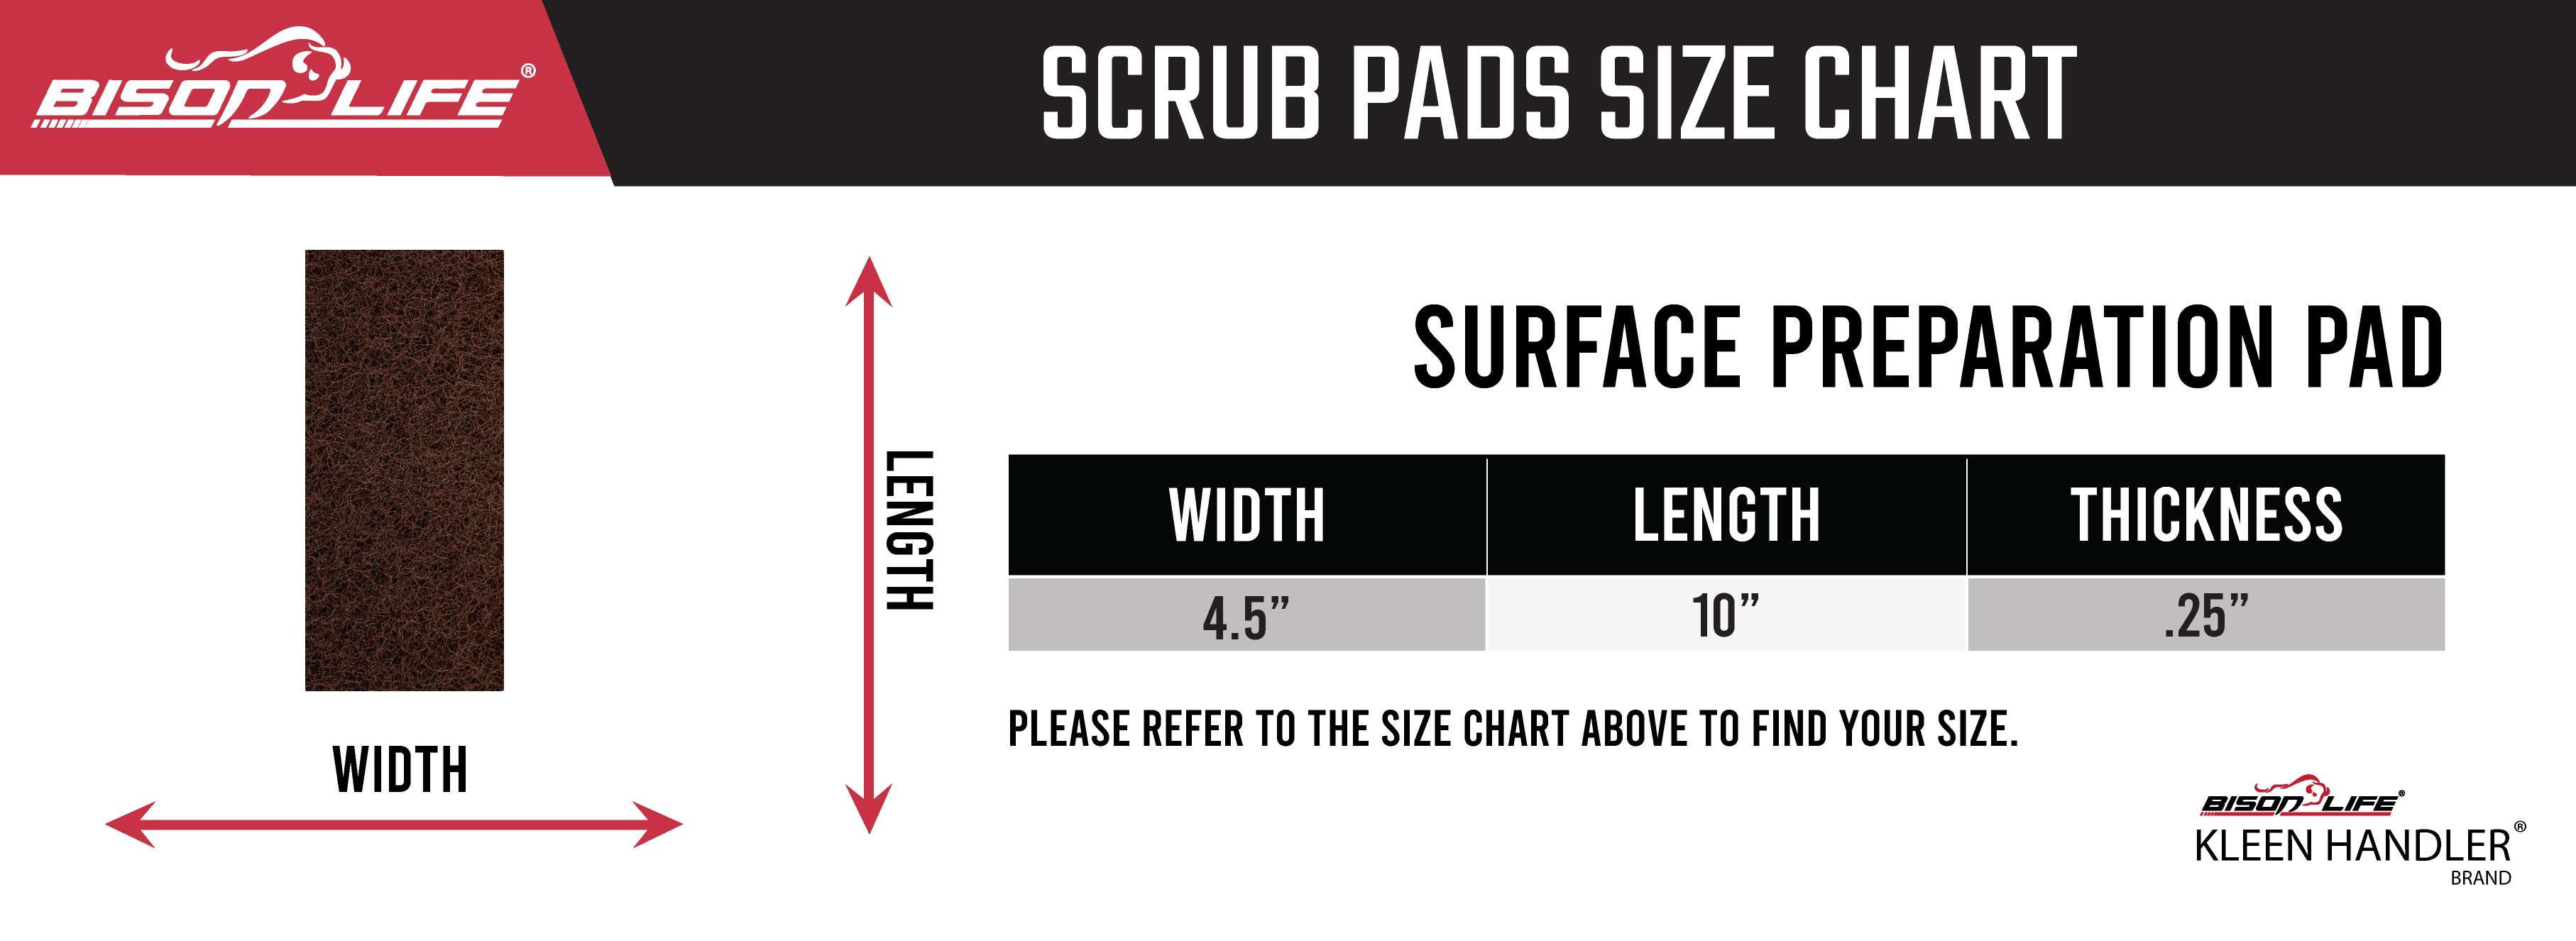 Scrub Pad Size Chart